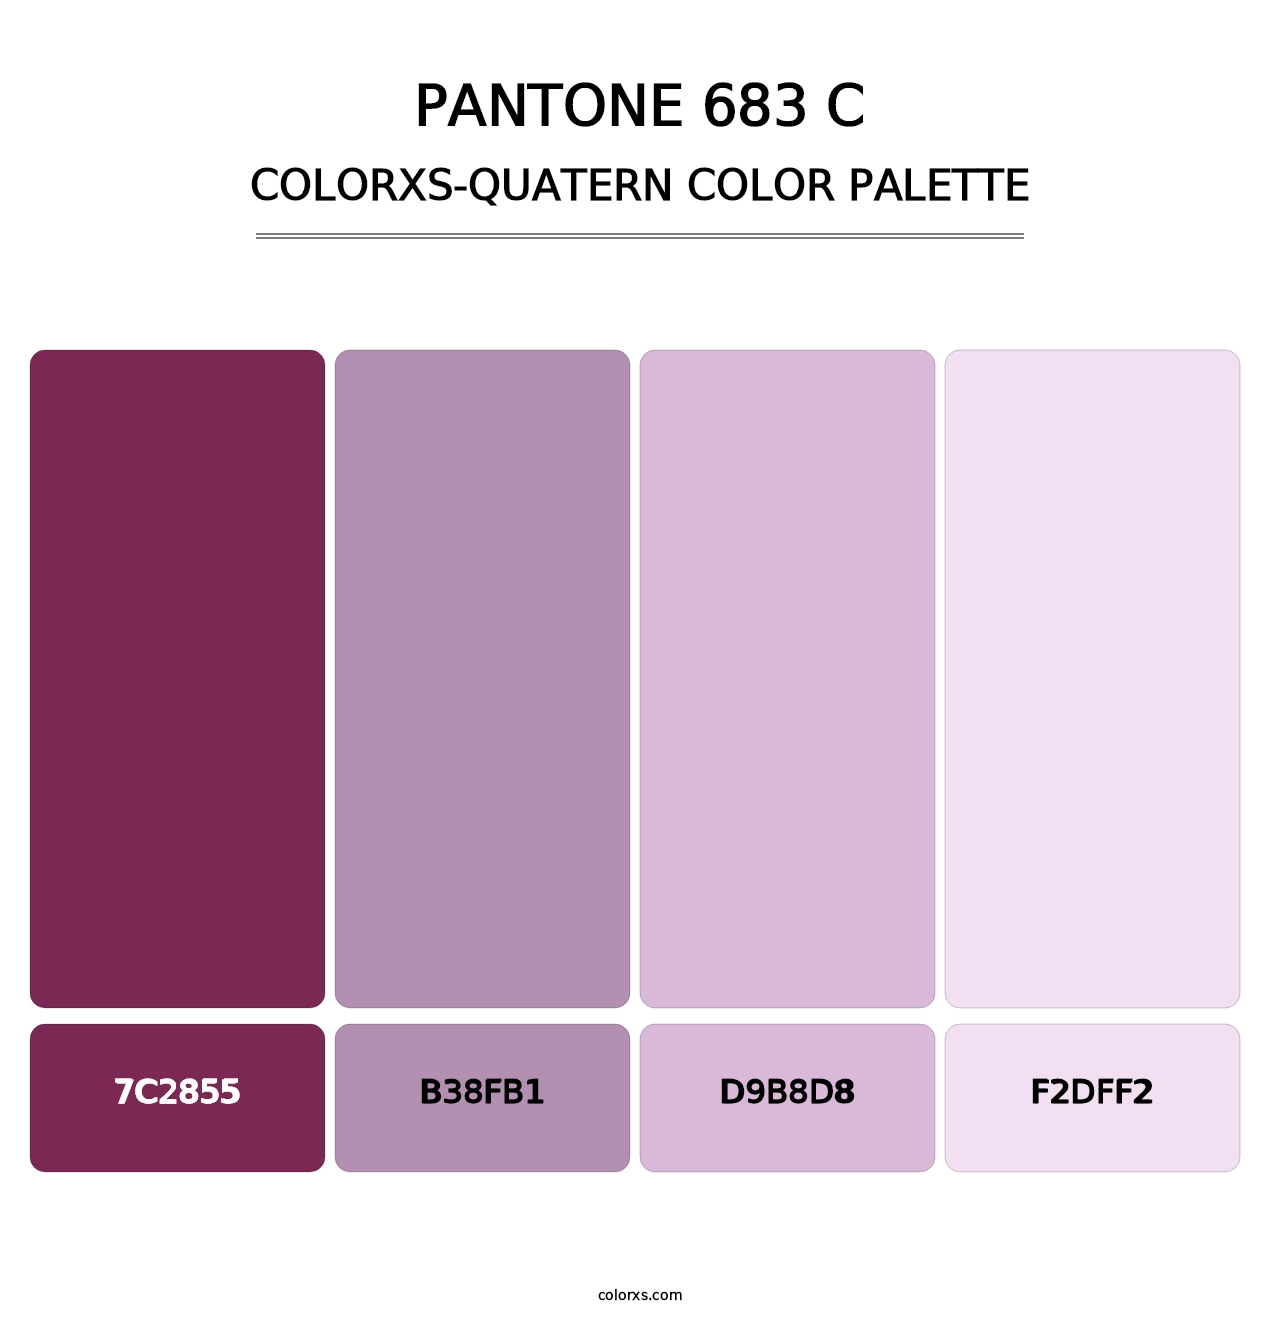 PANTONE 683 C - Colorxs Quatern Palette